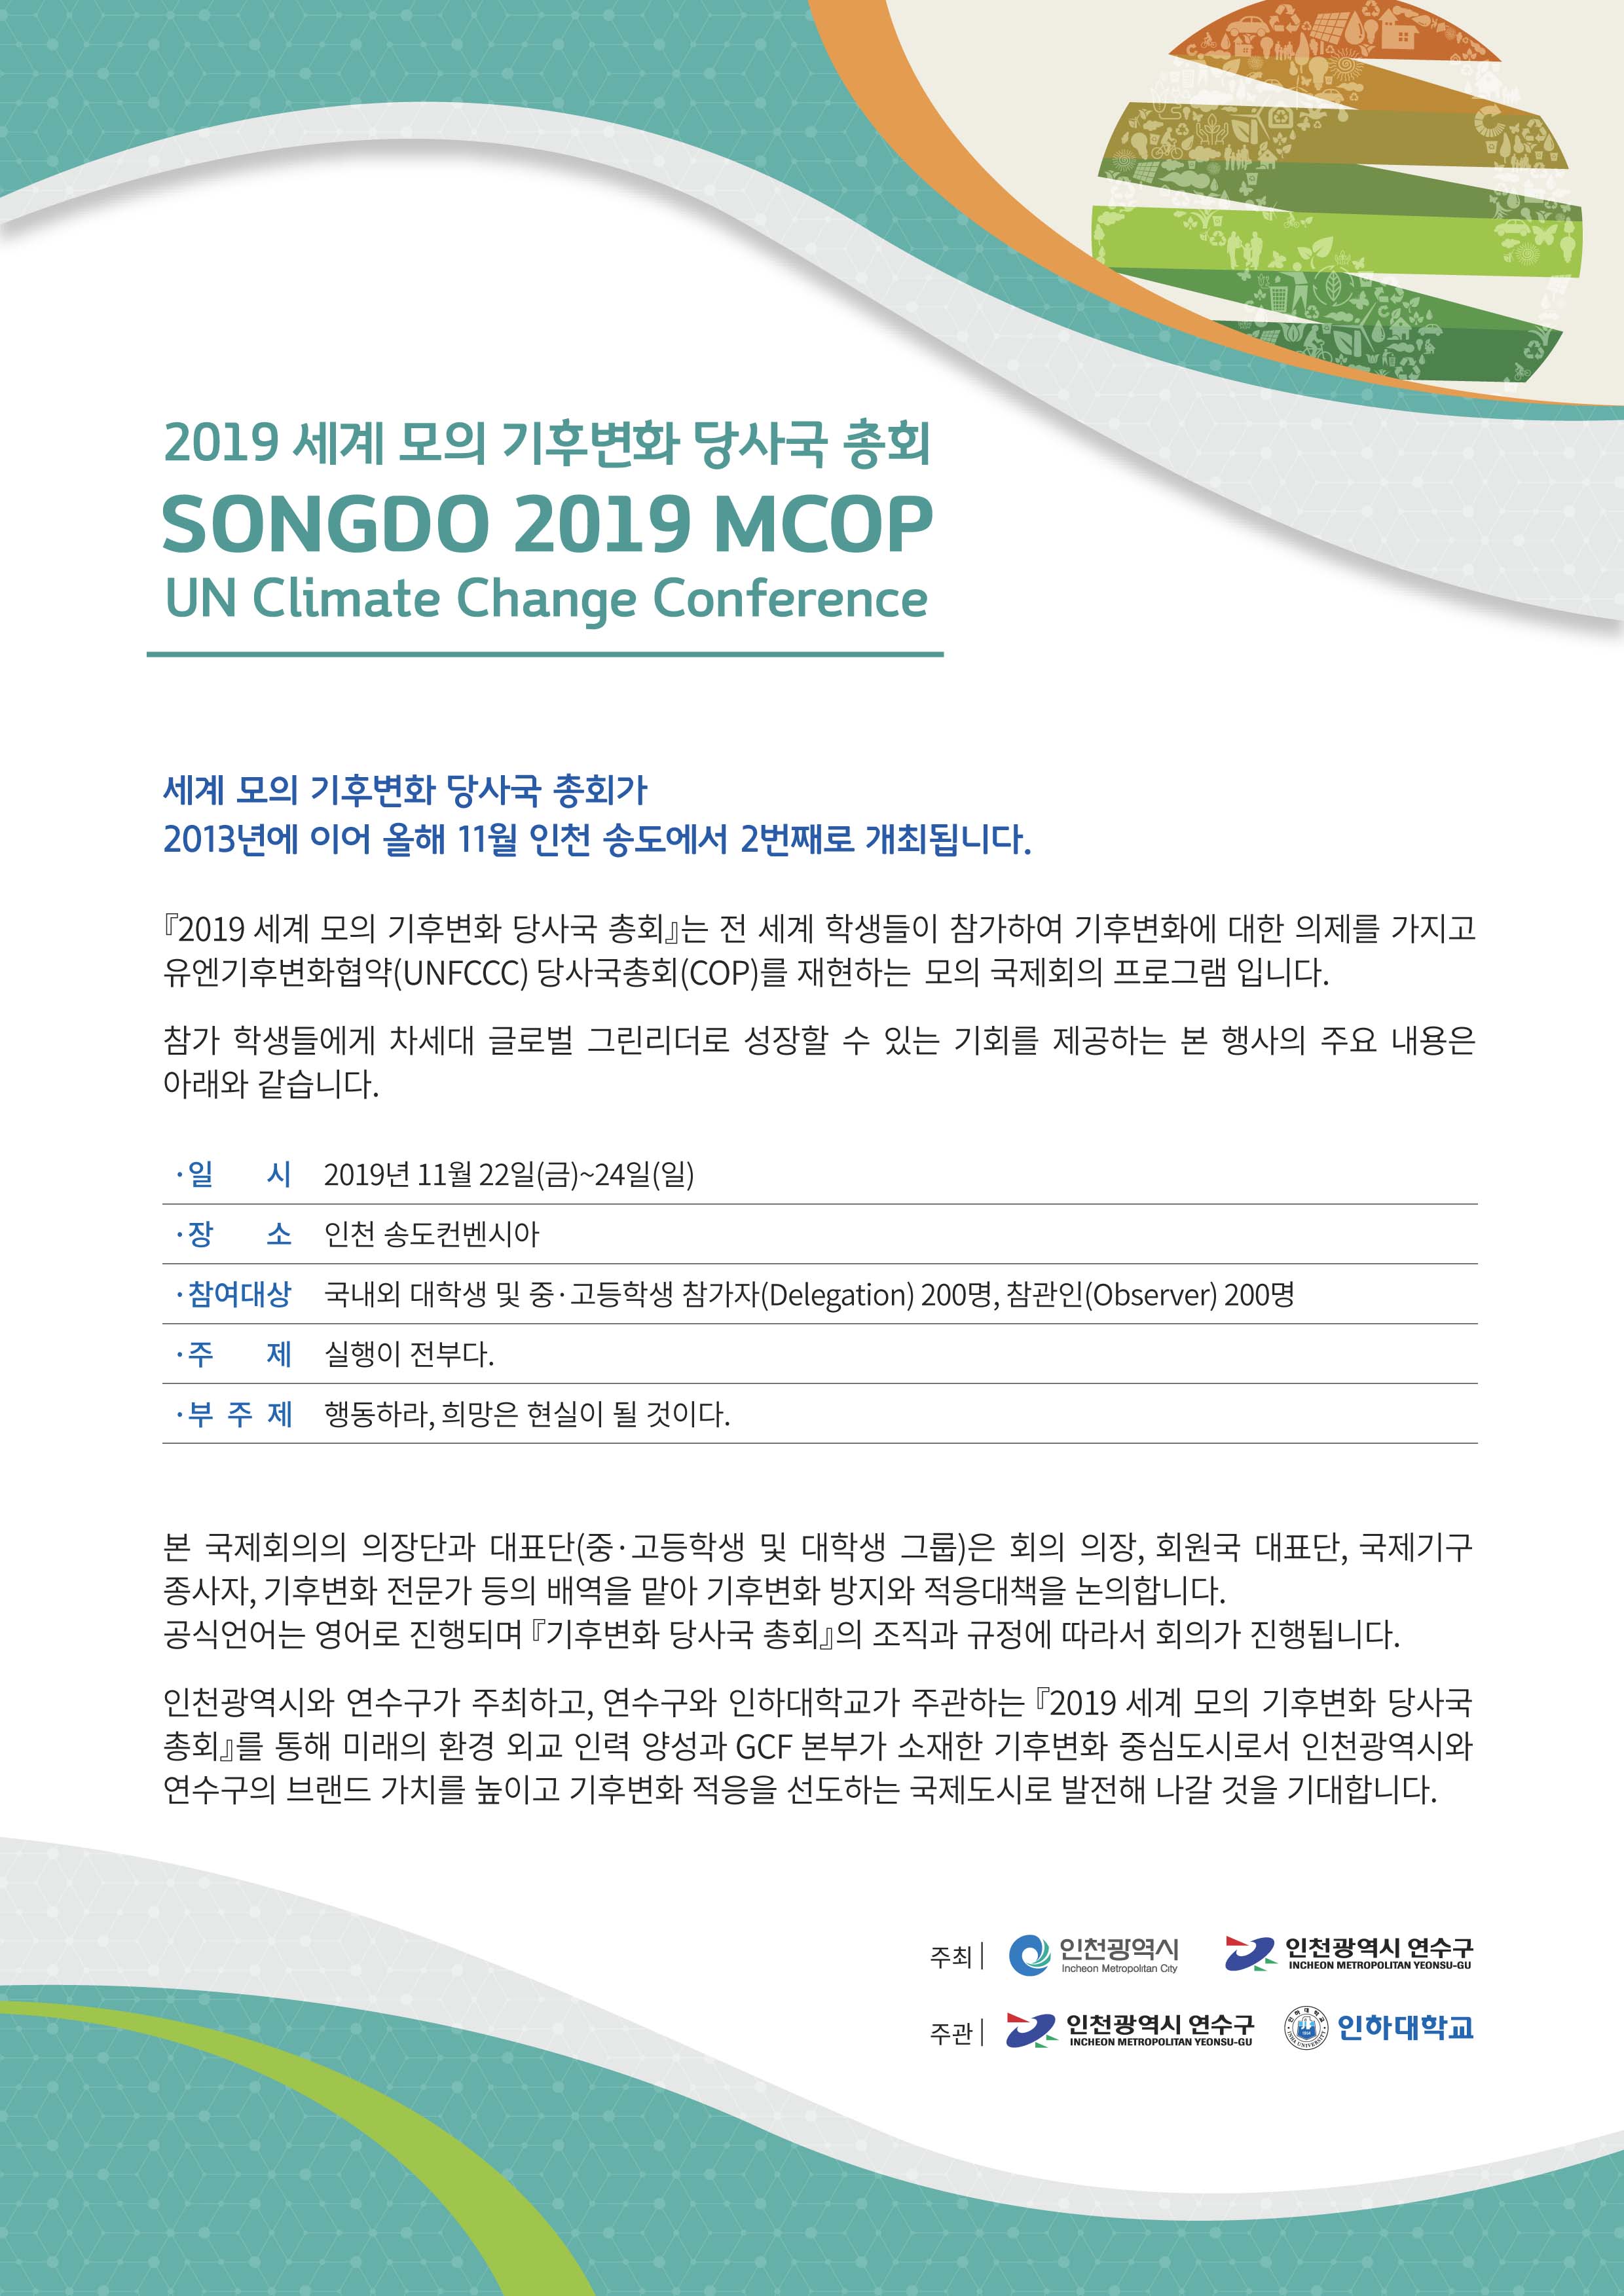 [대외활동] 2019 세계 모의 기후변화 당사국 총회 참가자 모집 안내